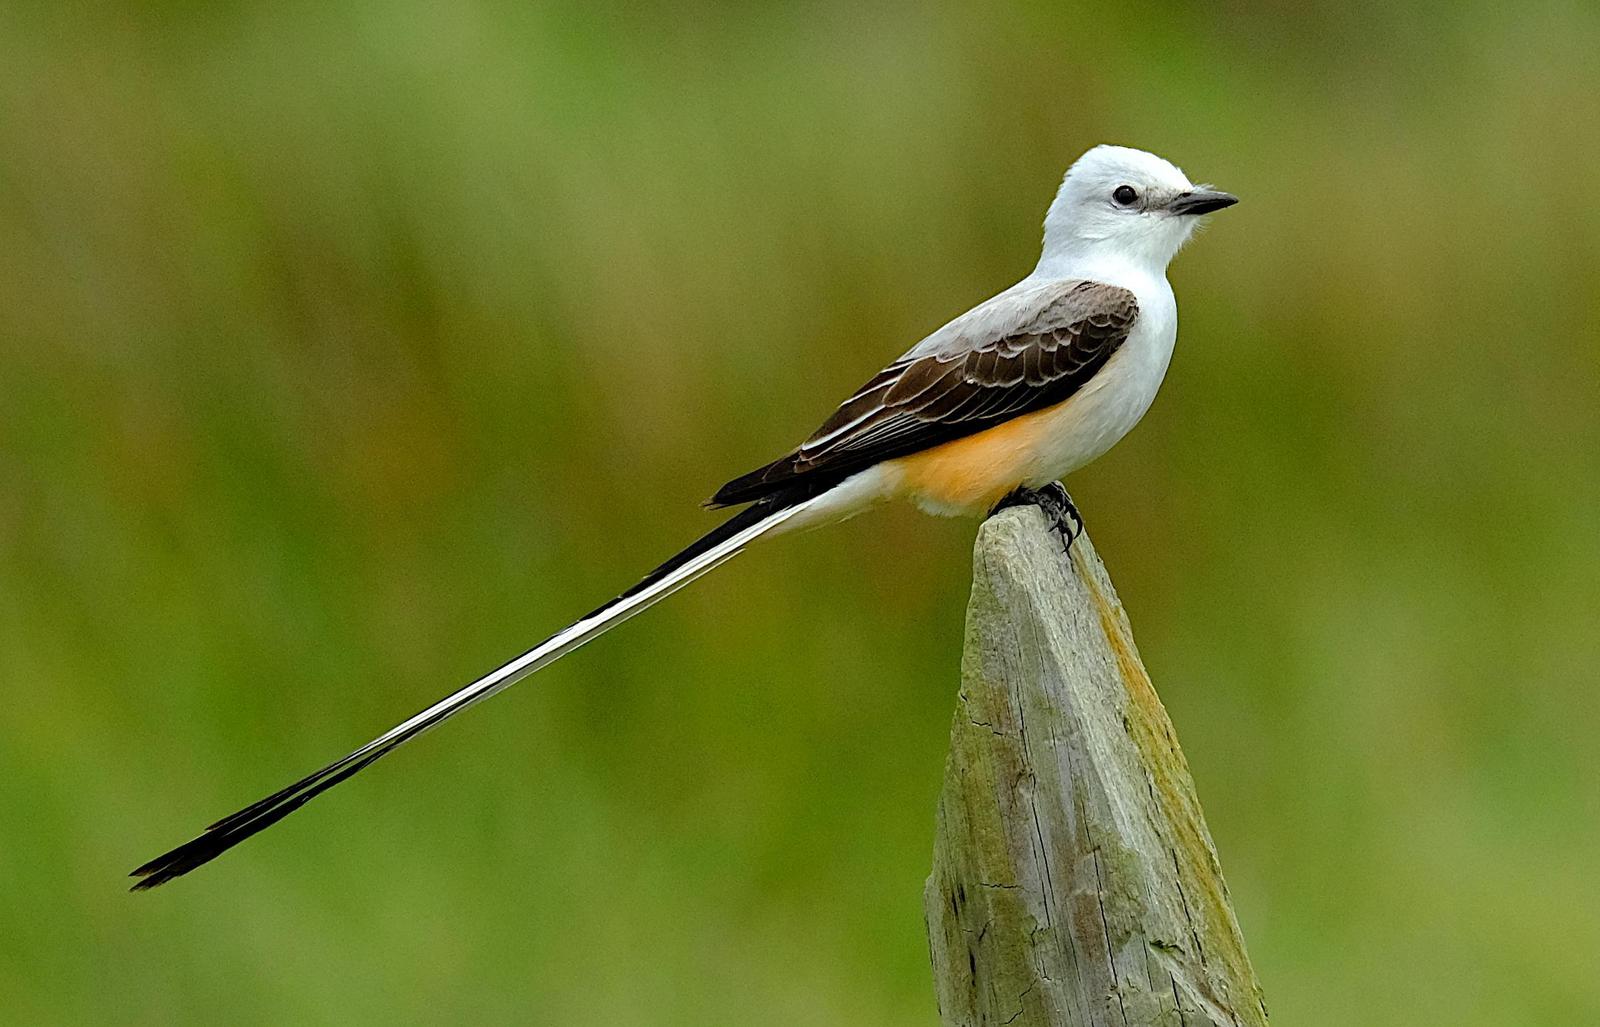 Scissor-tailed Flycatcher Photo by Dave Zittin